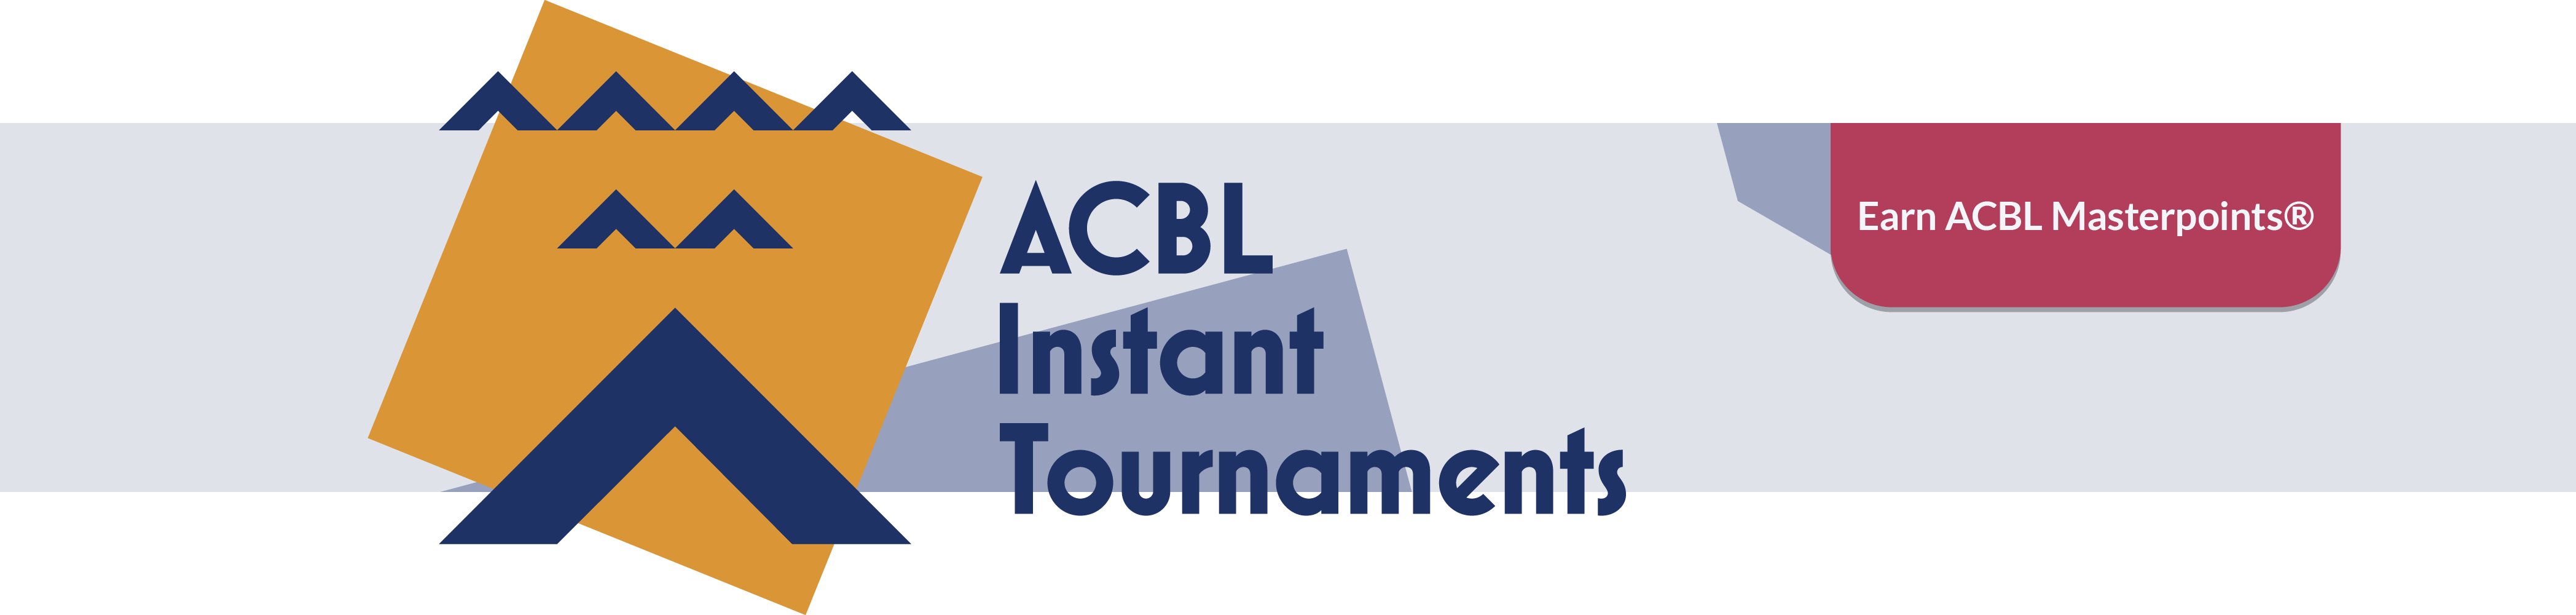 ACBL Instant Tournaments